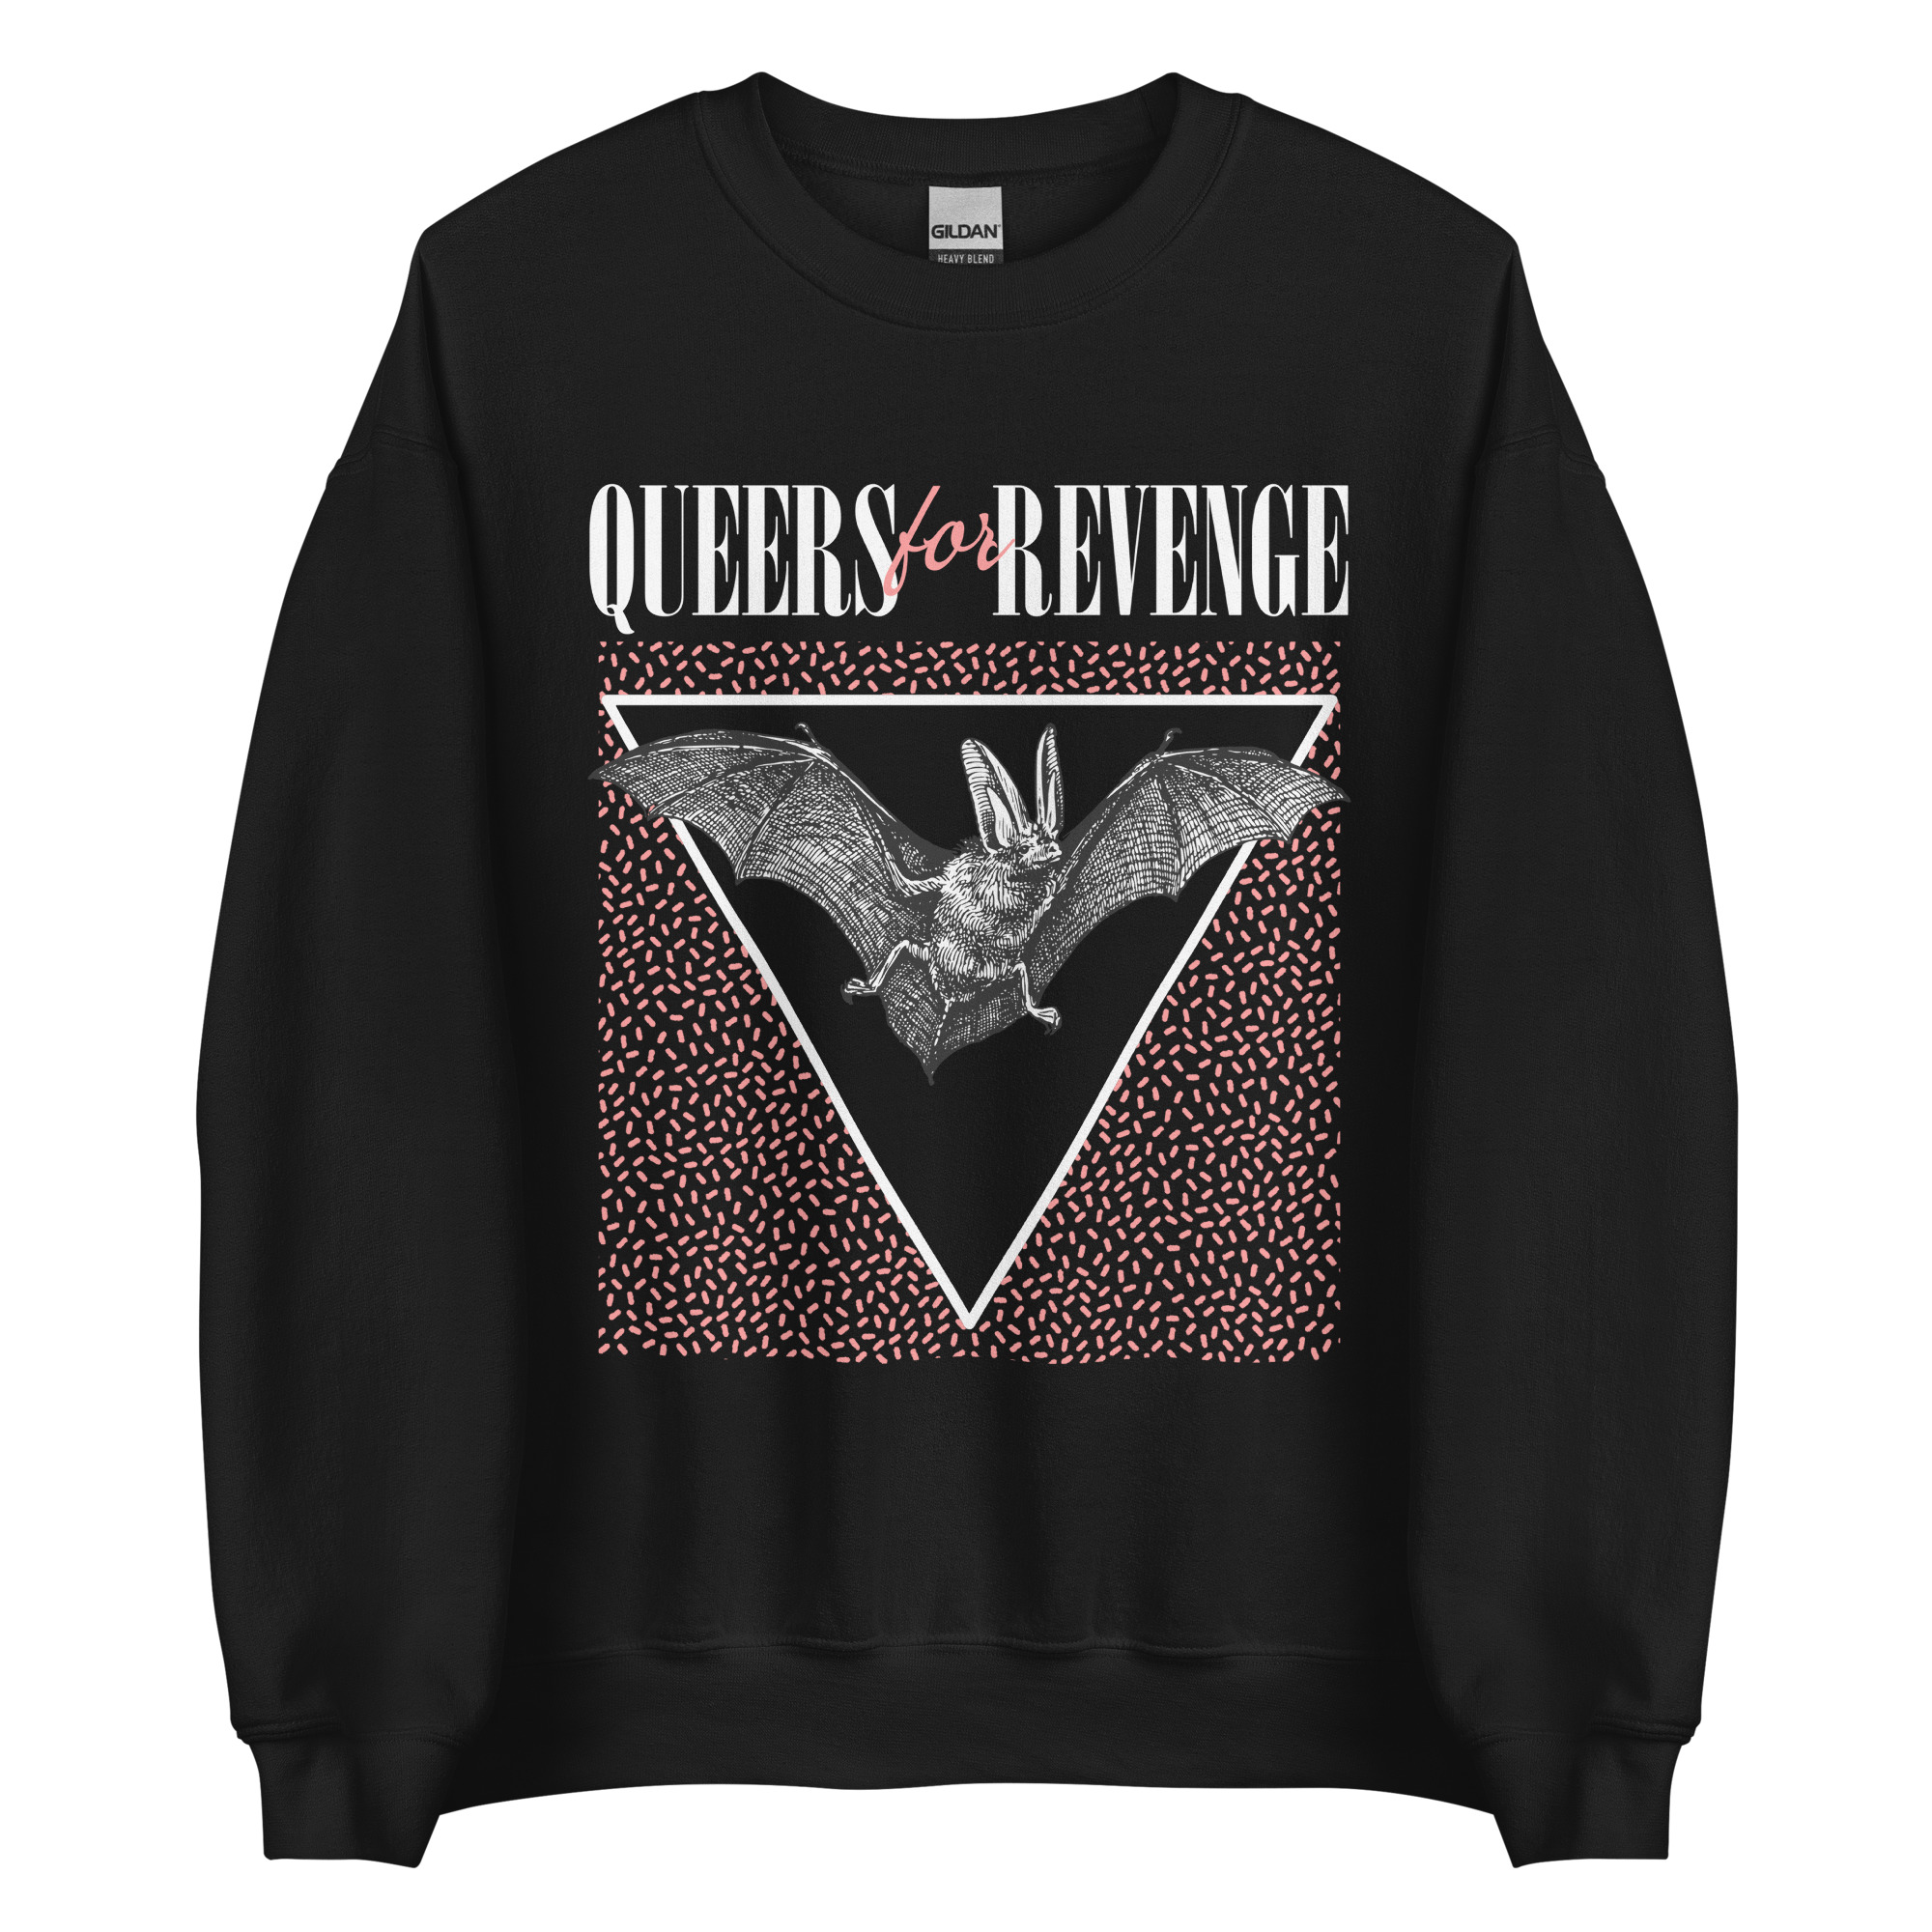 Featured image for “Queers for Revenge 80s - Unisex Gildan Sweatshirt”